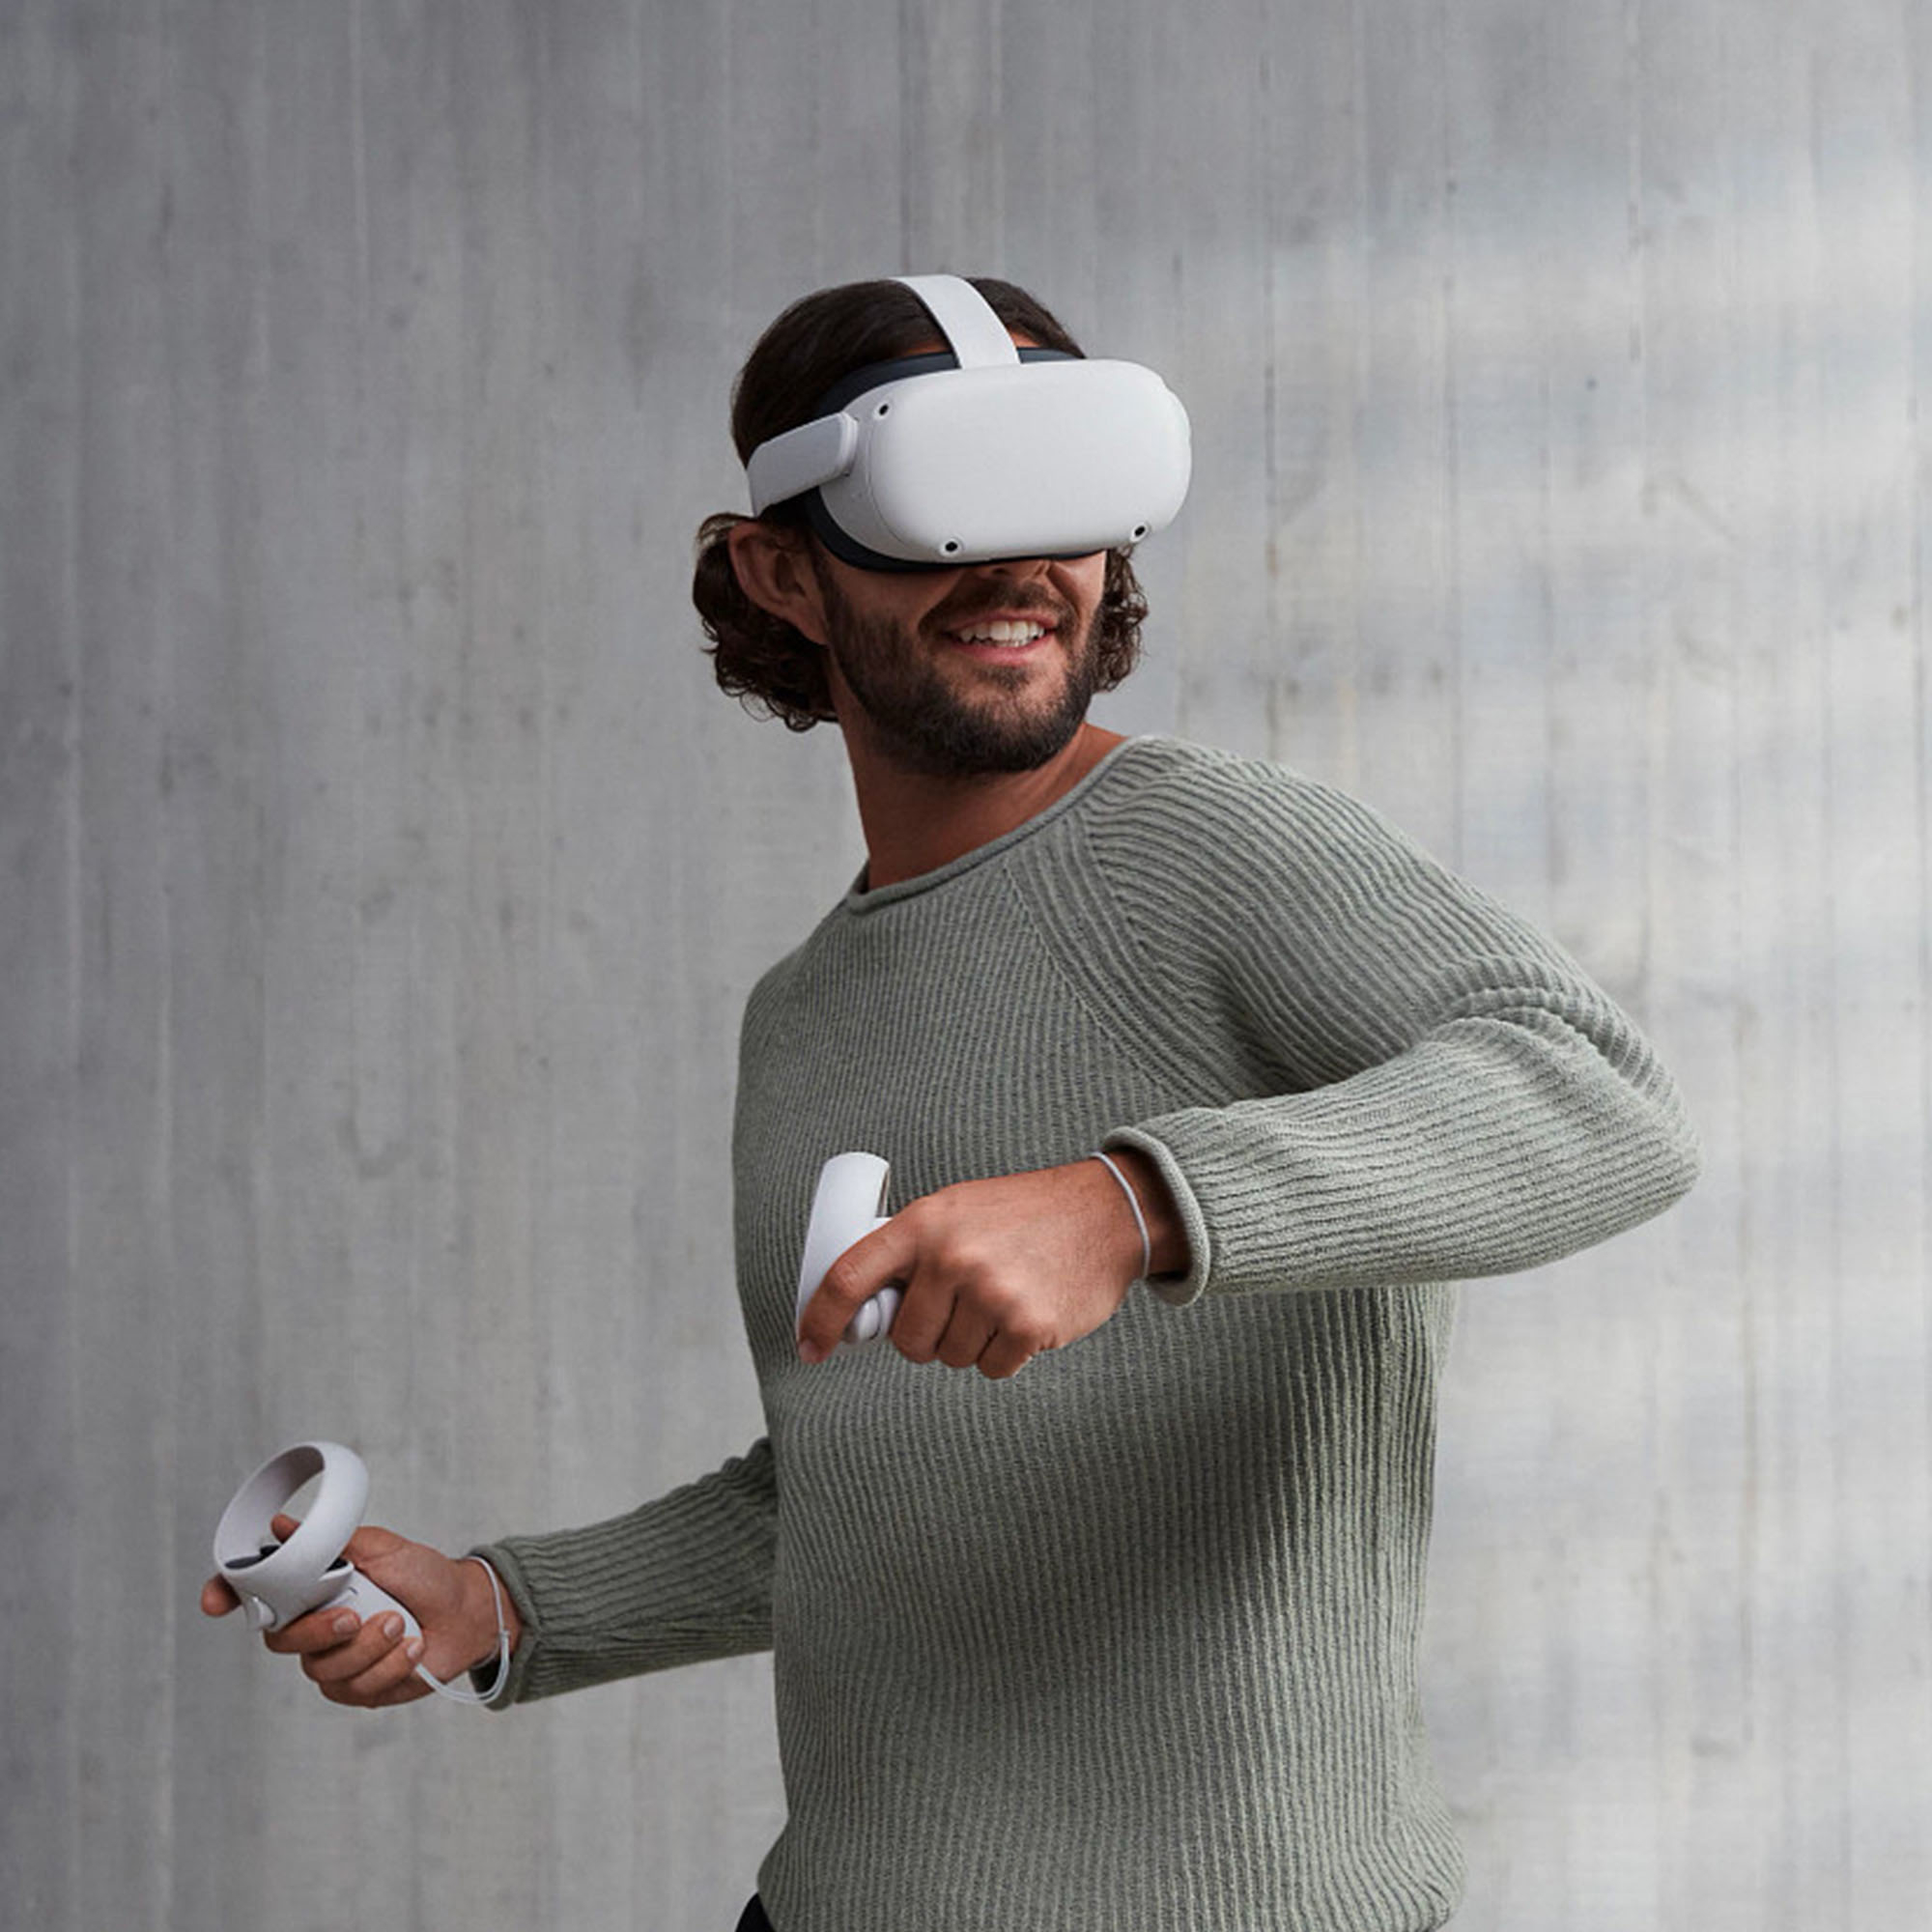 テレビ/映像機器 その他 Meta Quest 2 Advanced All-In-One Virtual Reality Headset 256GB 